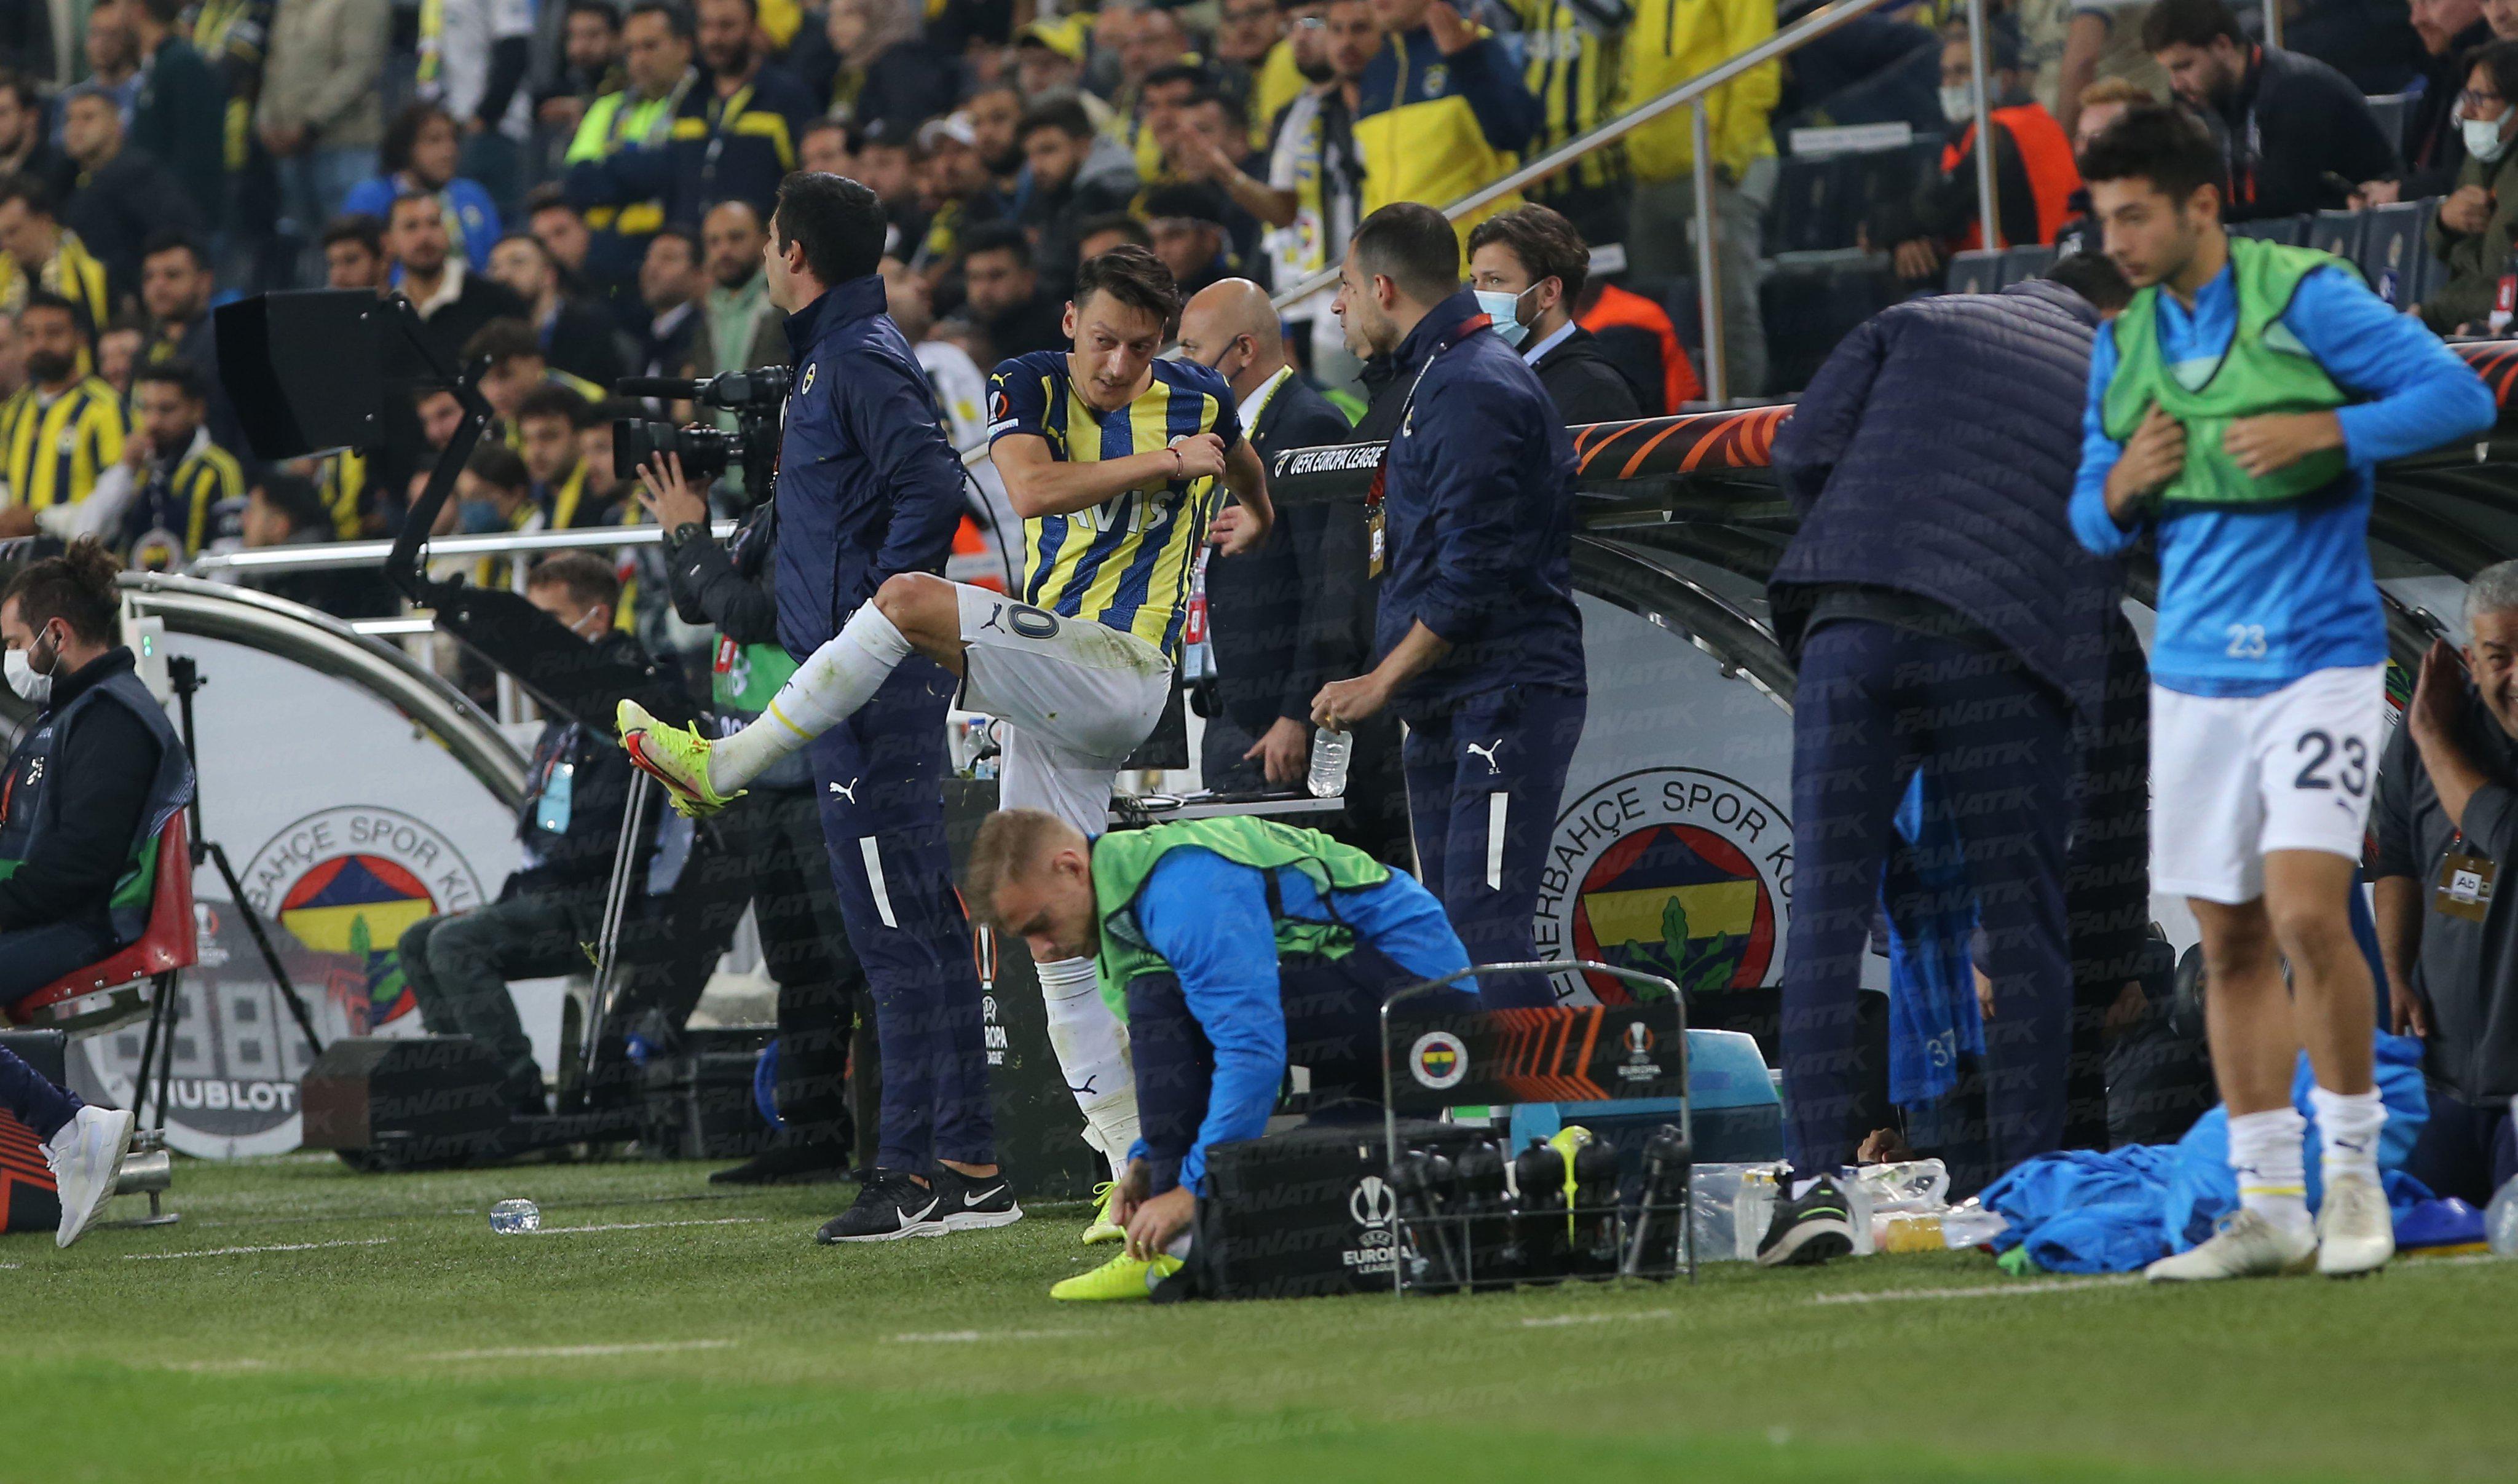 Fenerbahçede Mesut Özilden Vitor Pereiraya şok tepki Çılgına döndü, su şişelerini tekmeledi